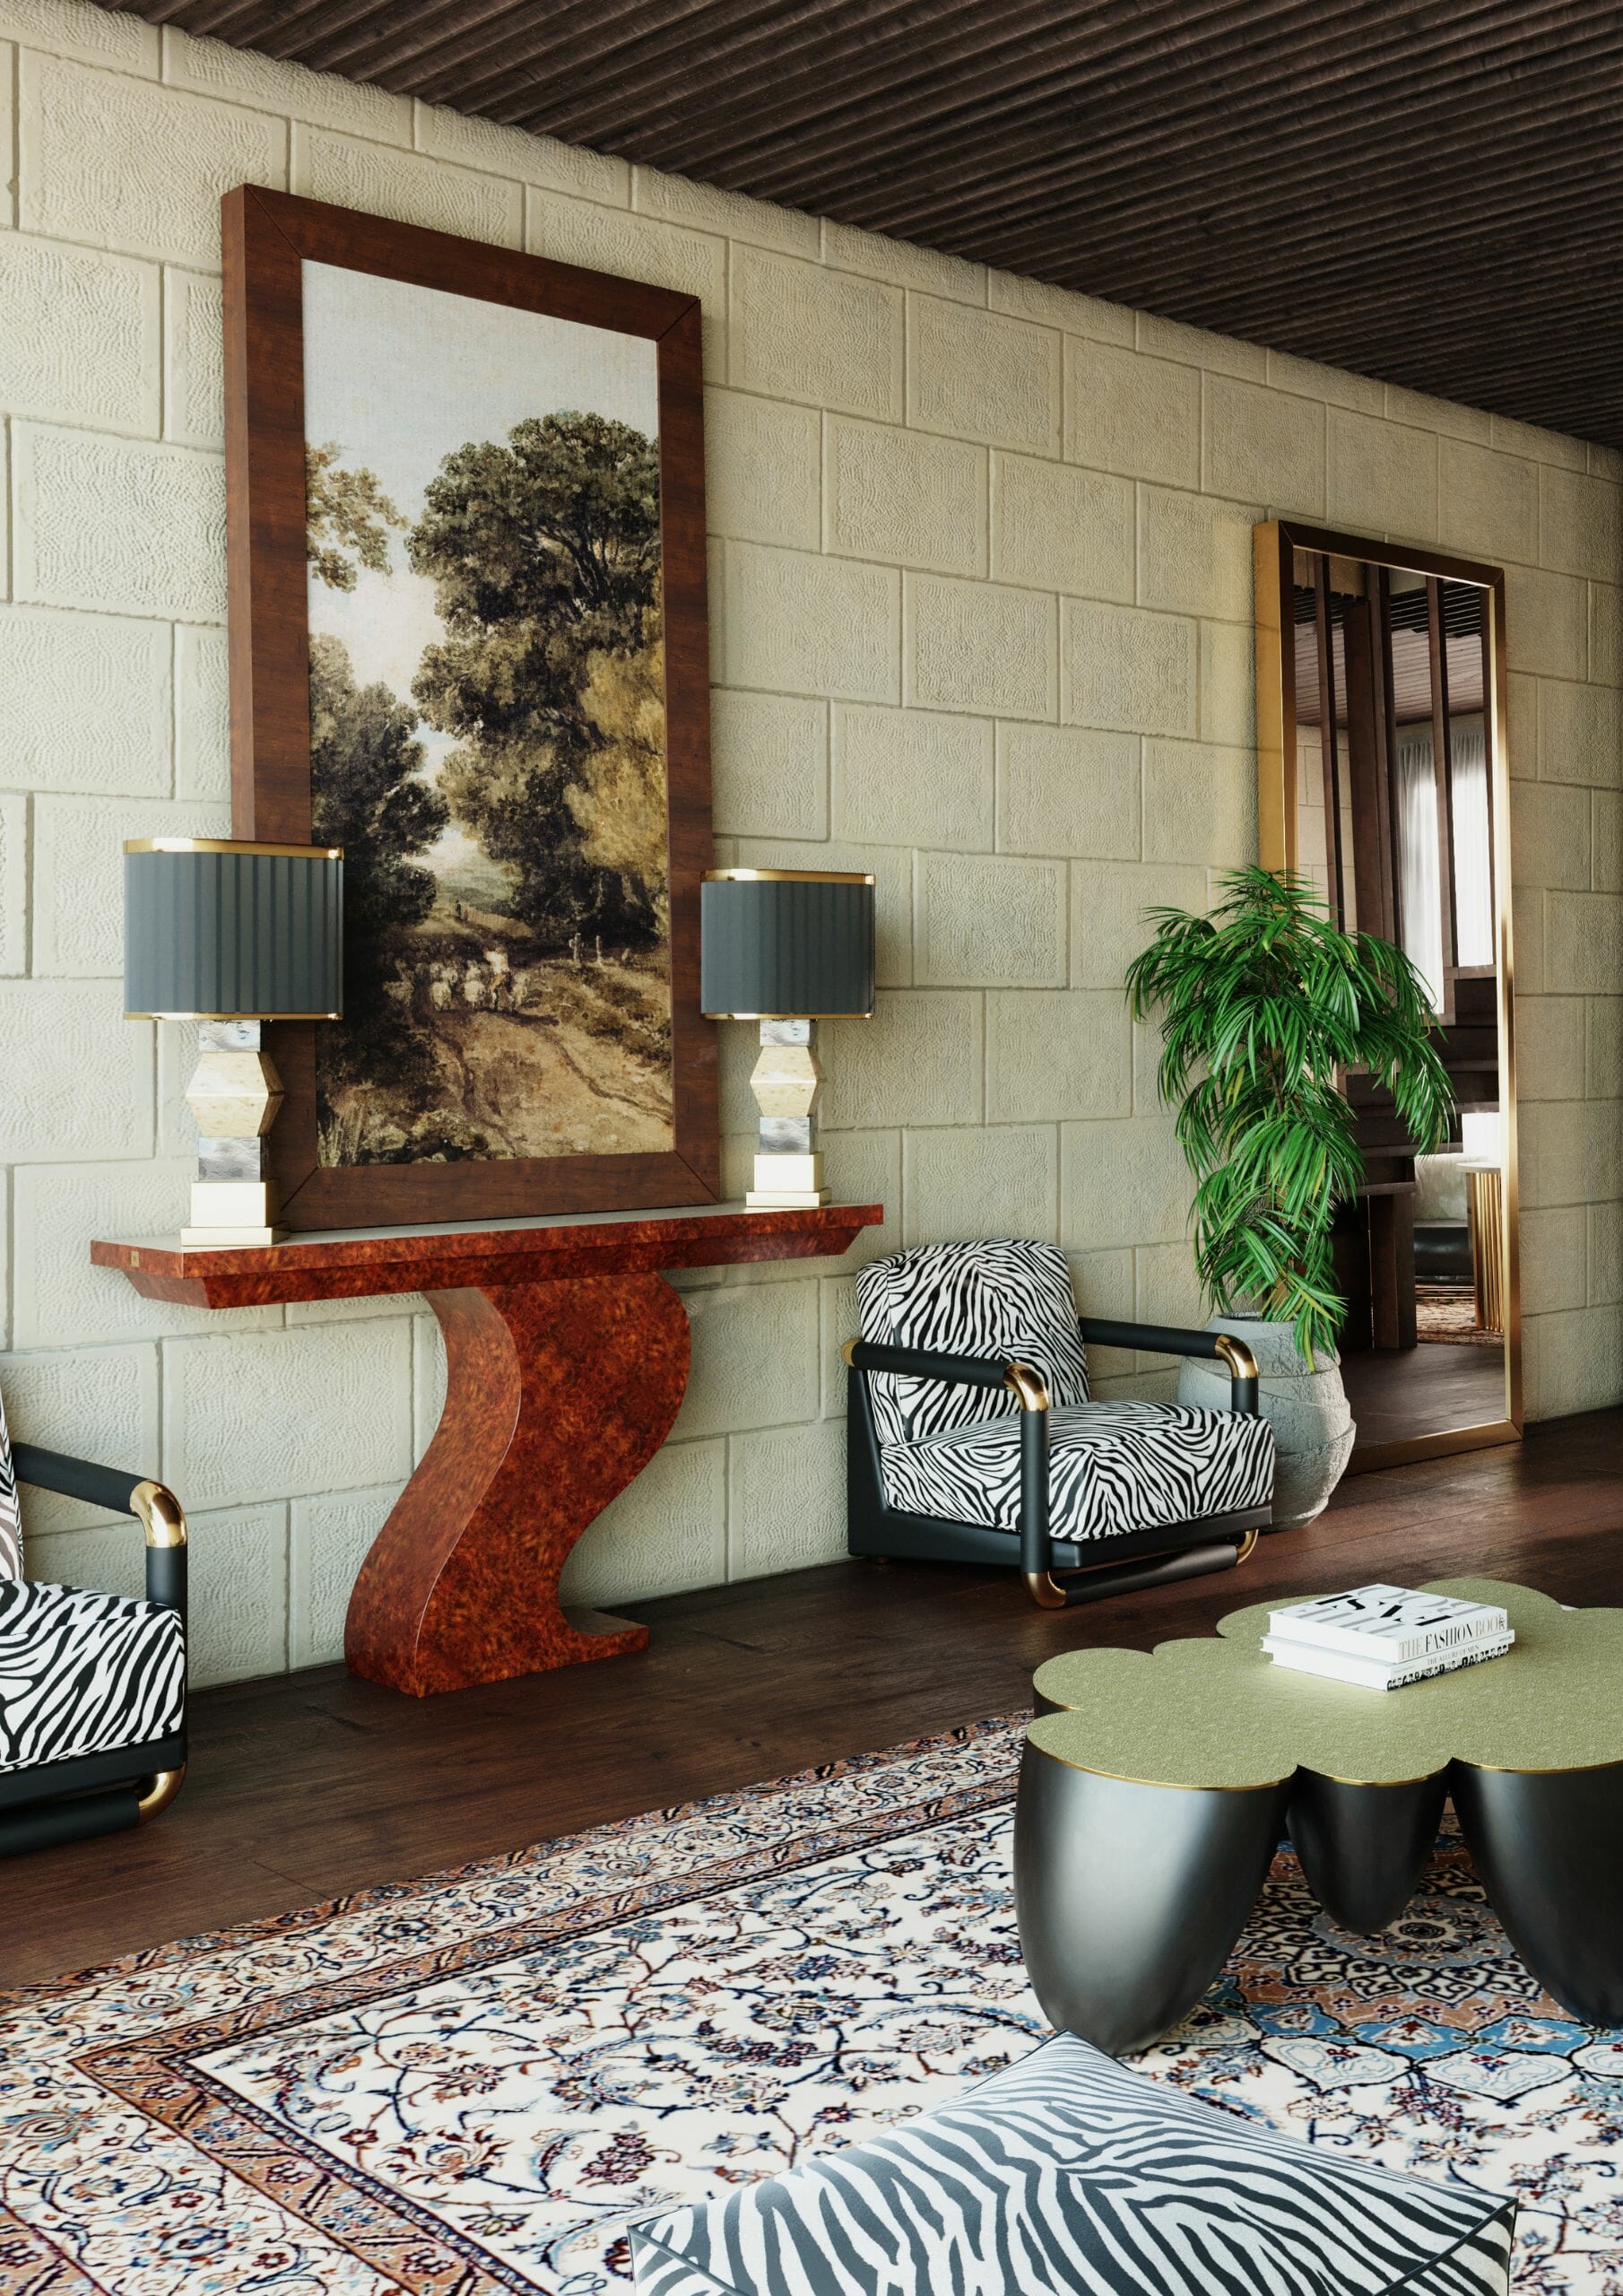 hallways decor ideas, witth modern furniture